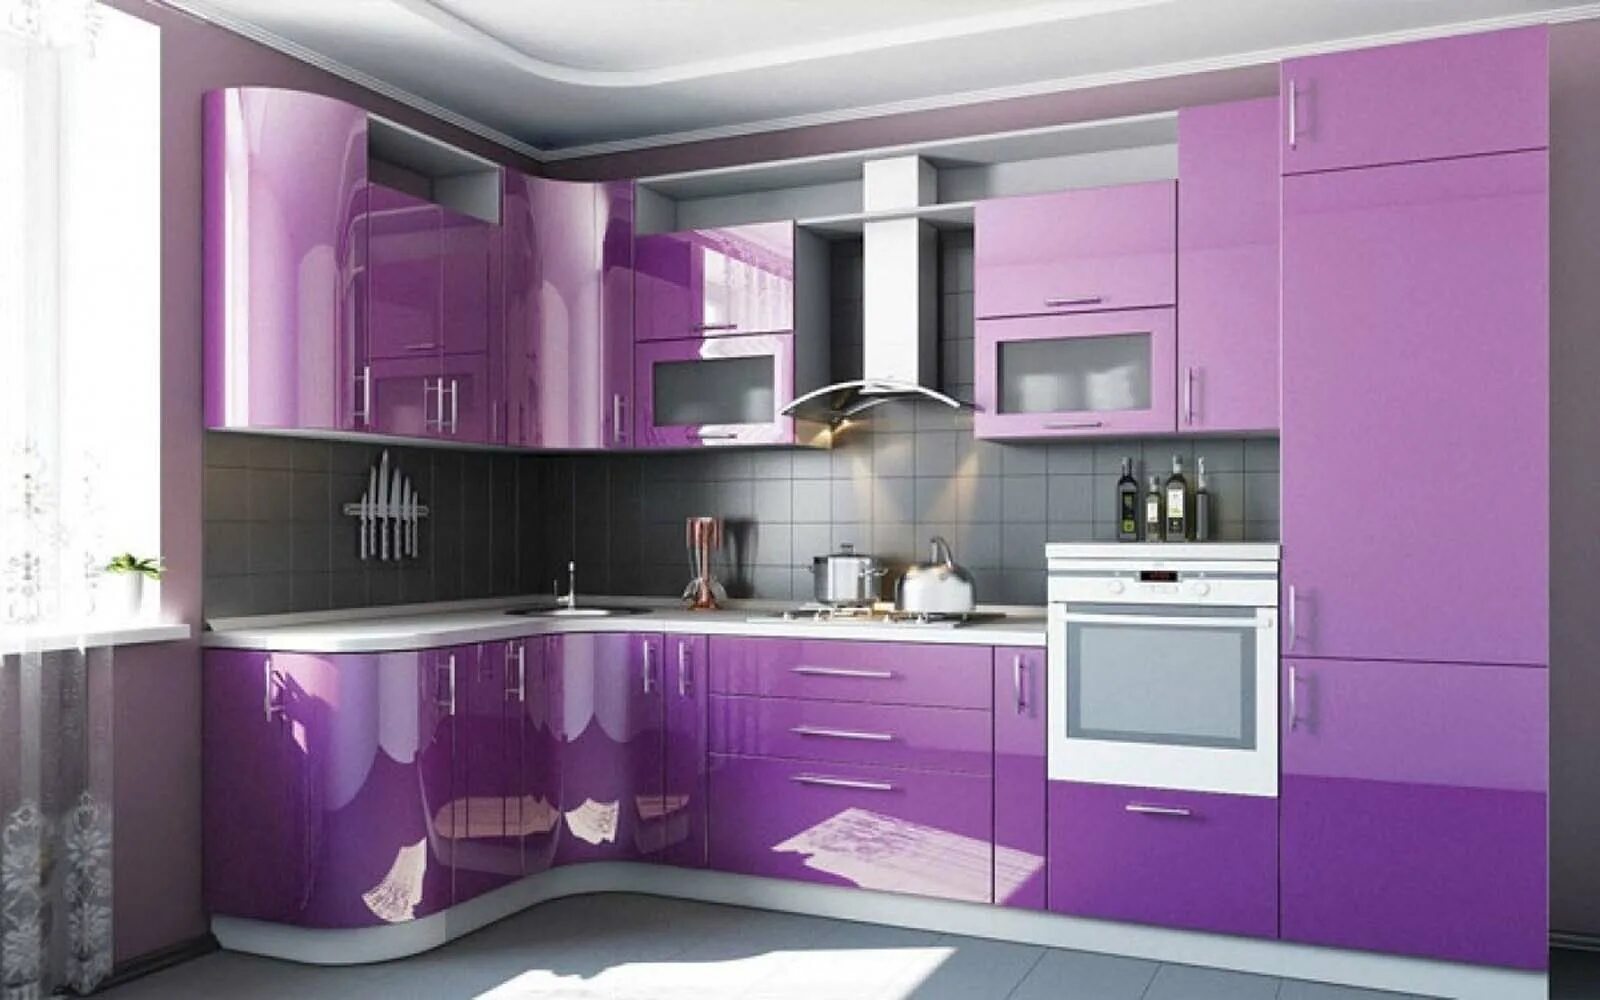 МДФ «фиолетовый металлик» 9504. Фиолетовый гарнитур. Кухонные гарнитуры. Кухня в сиреневом цвете. Куплю кухню недорого московская область